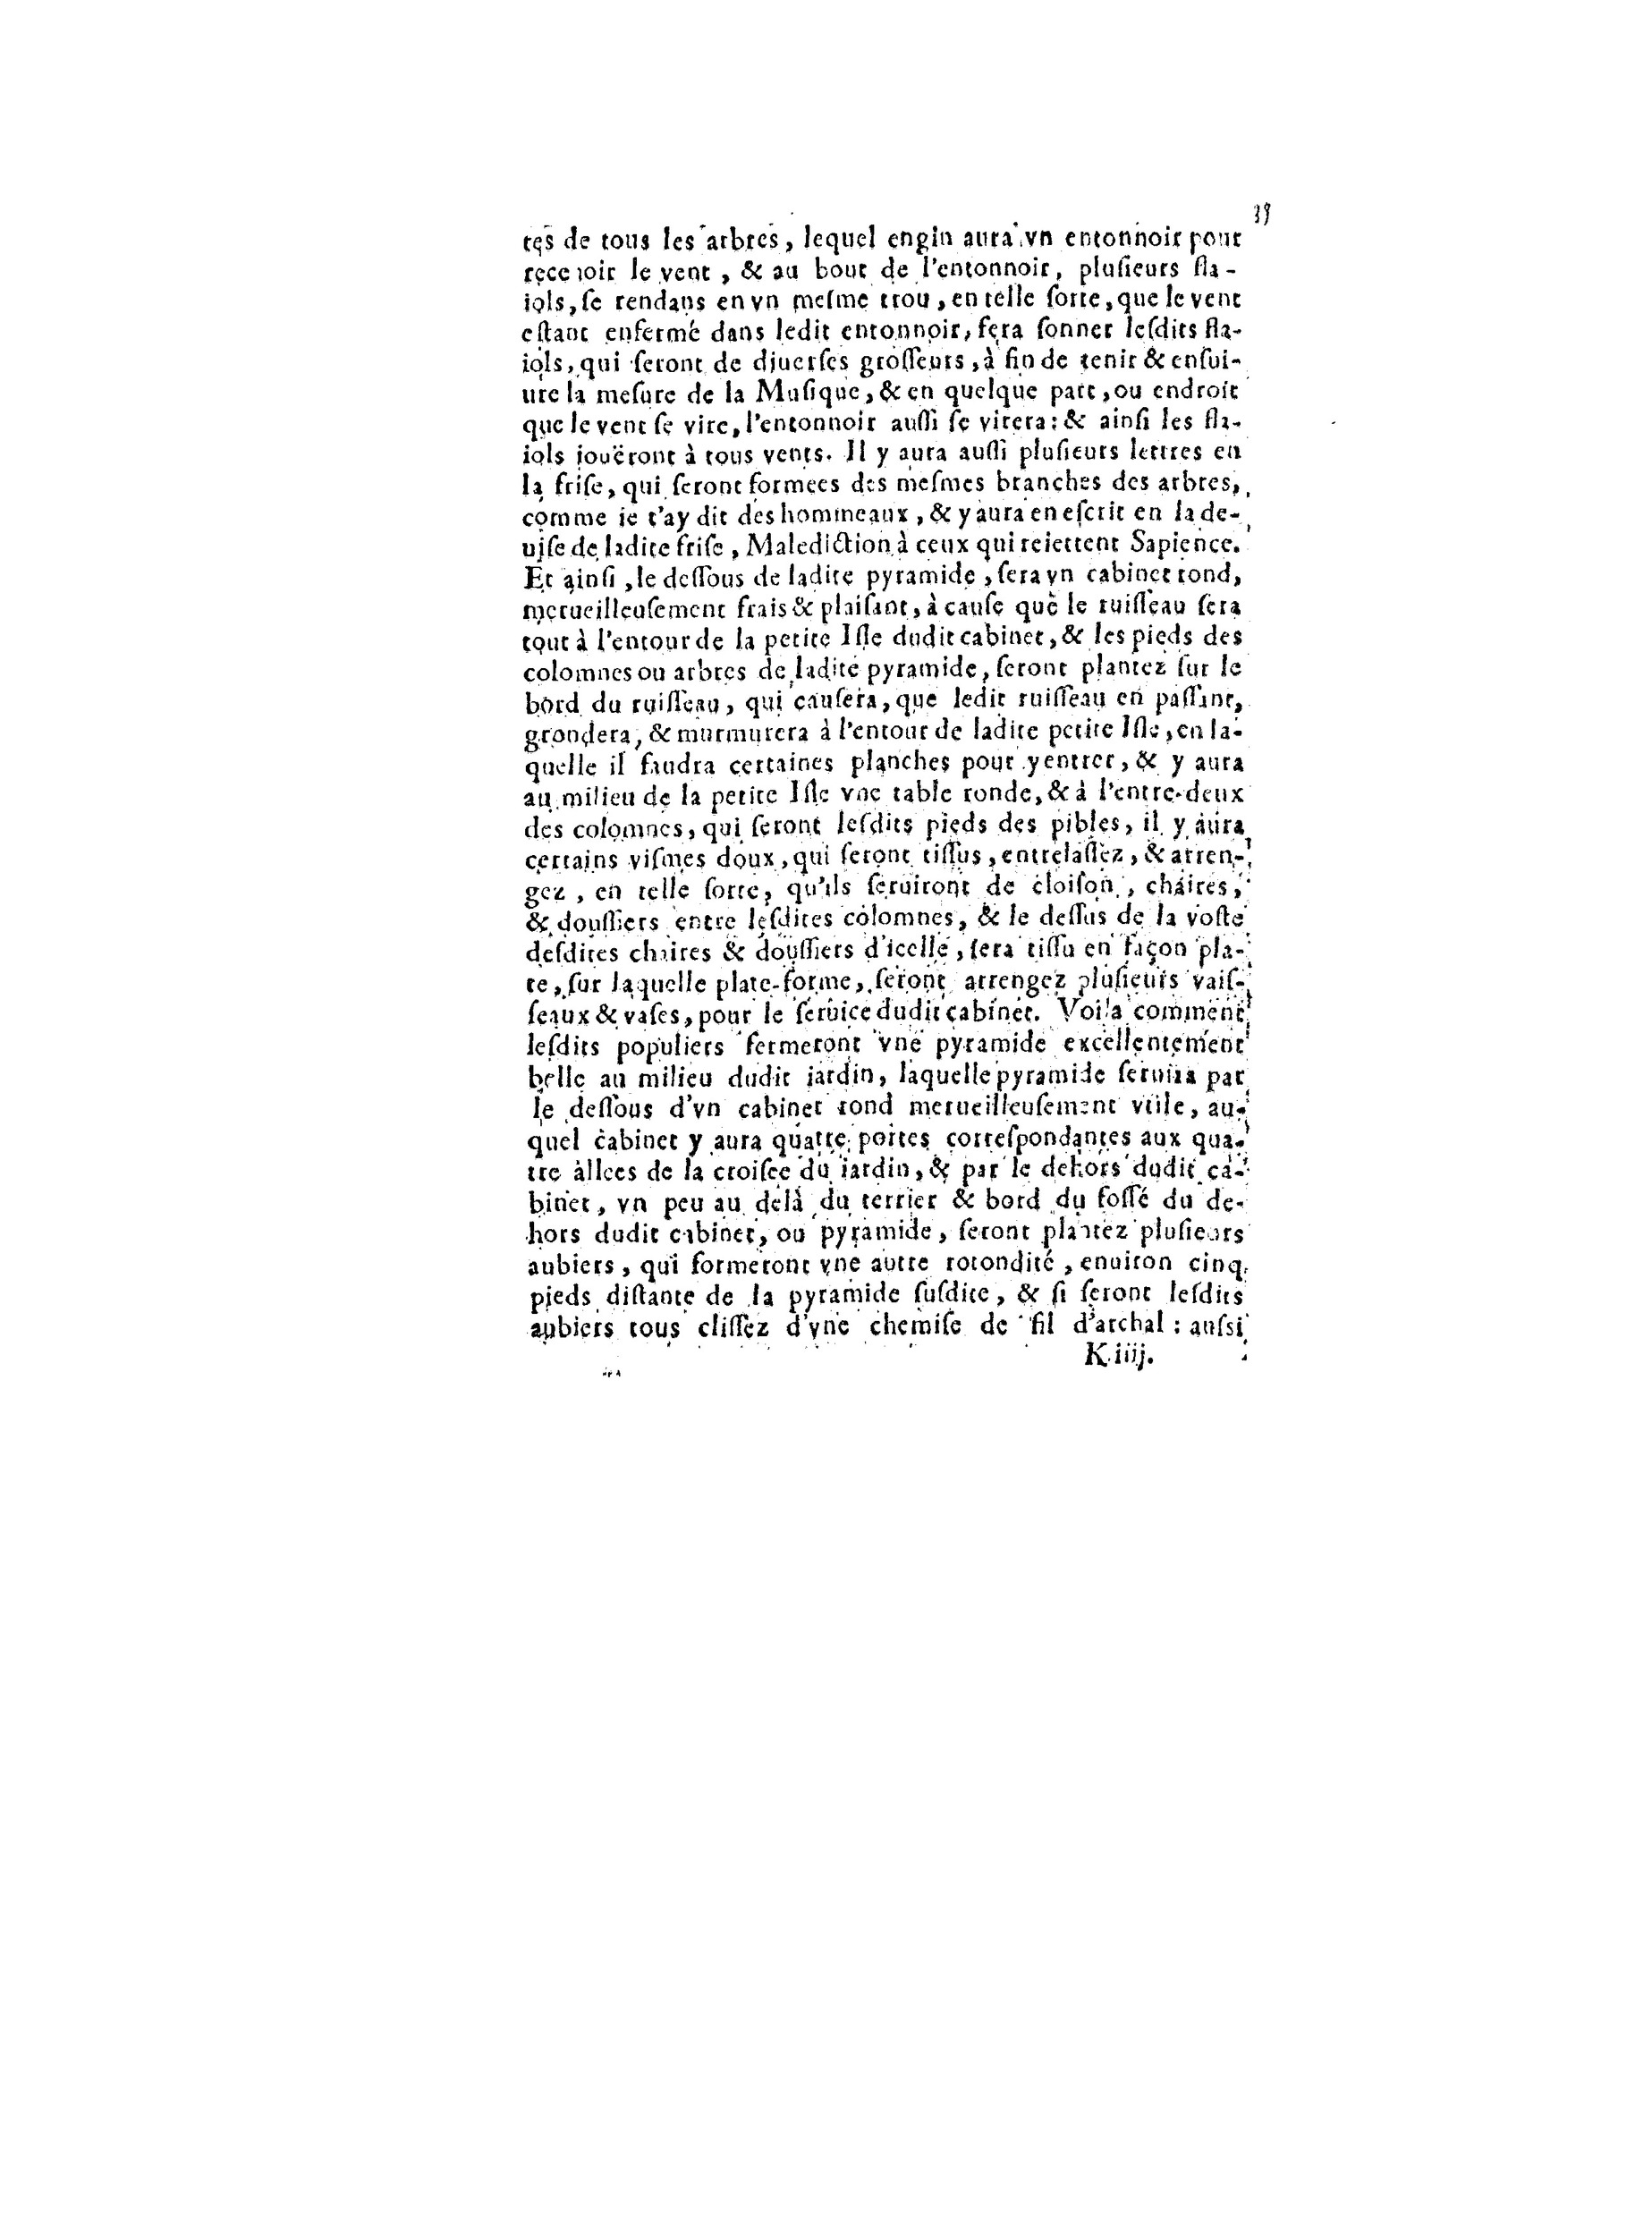 1563 Recepte veritable Berton_BNF_Page_082.jpg